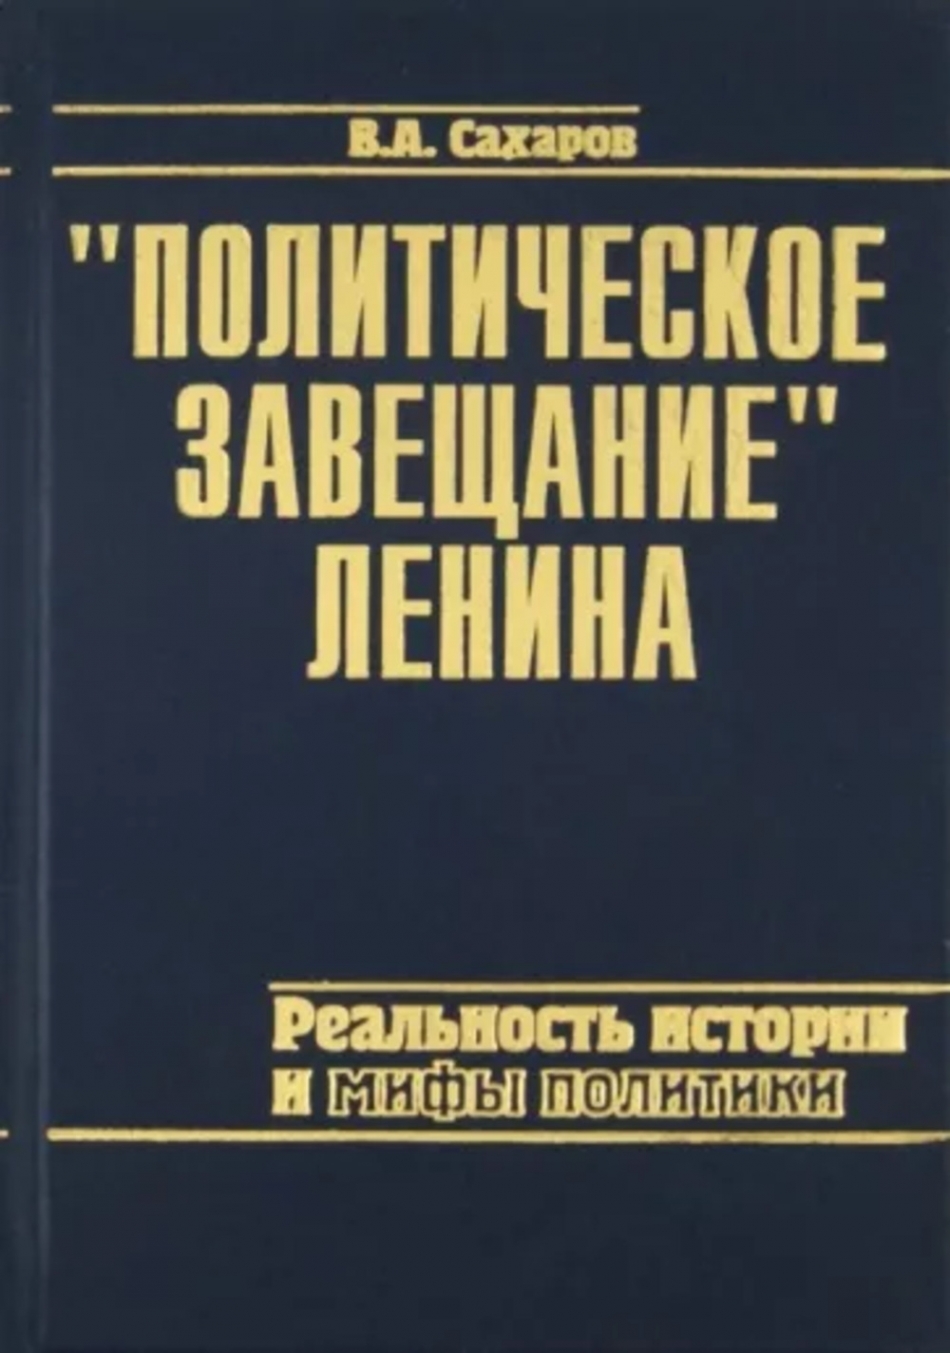 Сахаров В.А. - "Политическое завещание" Ленина: реальность истории и мифы политики 